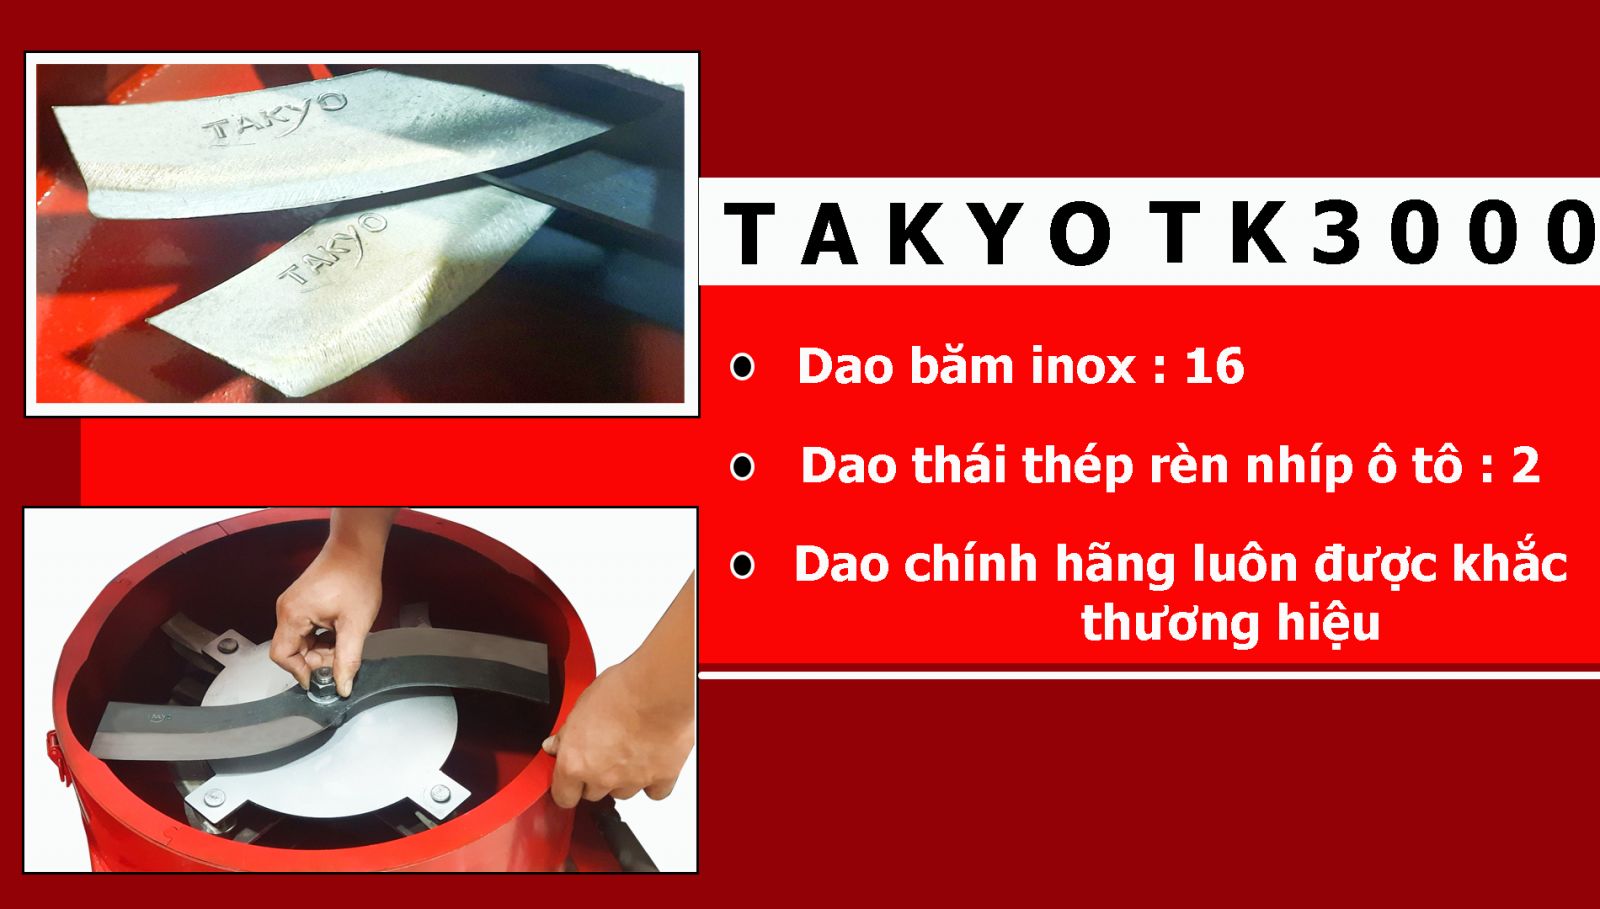 Cấu tạo bộ dao băm thái máy nghiền chuối Takyo TK 3000